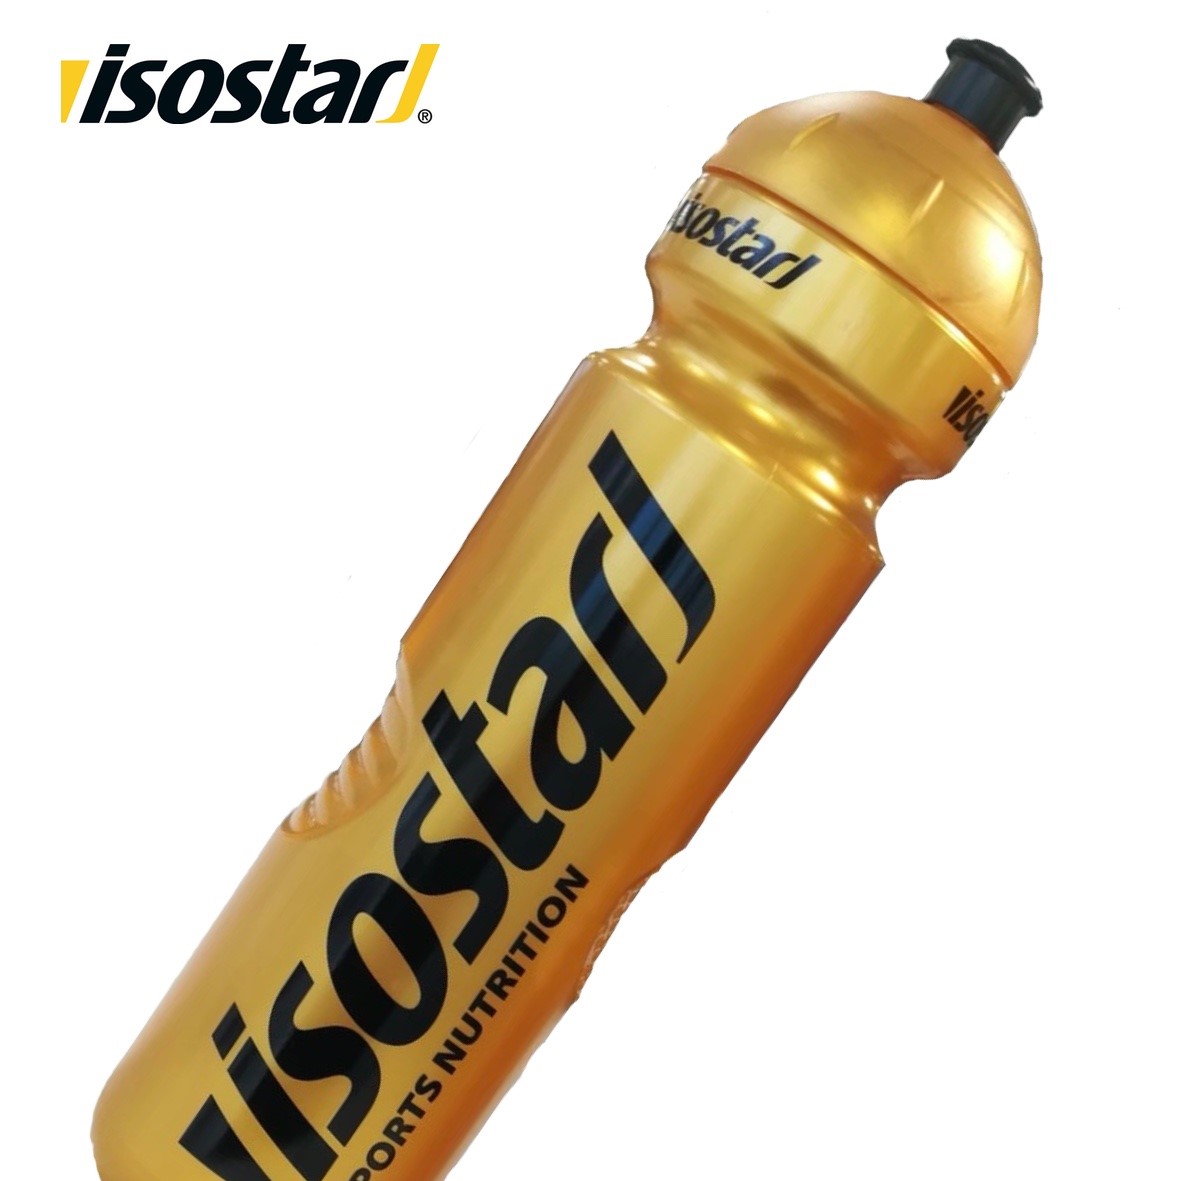 Isostar Bidon Gold (1000ml)